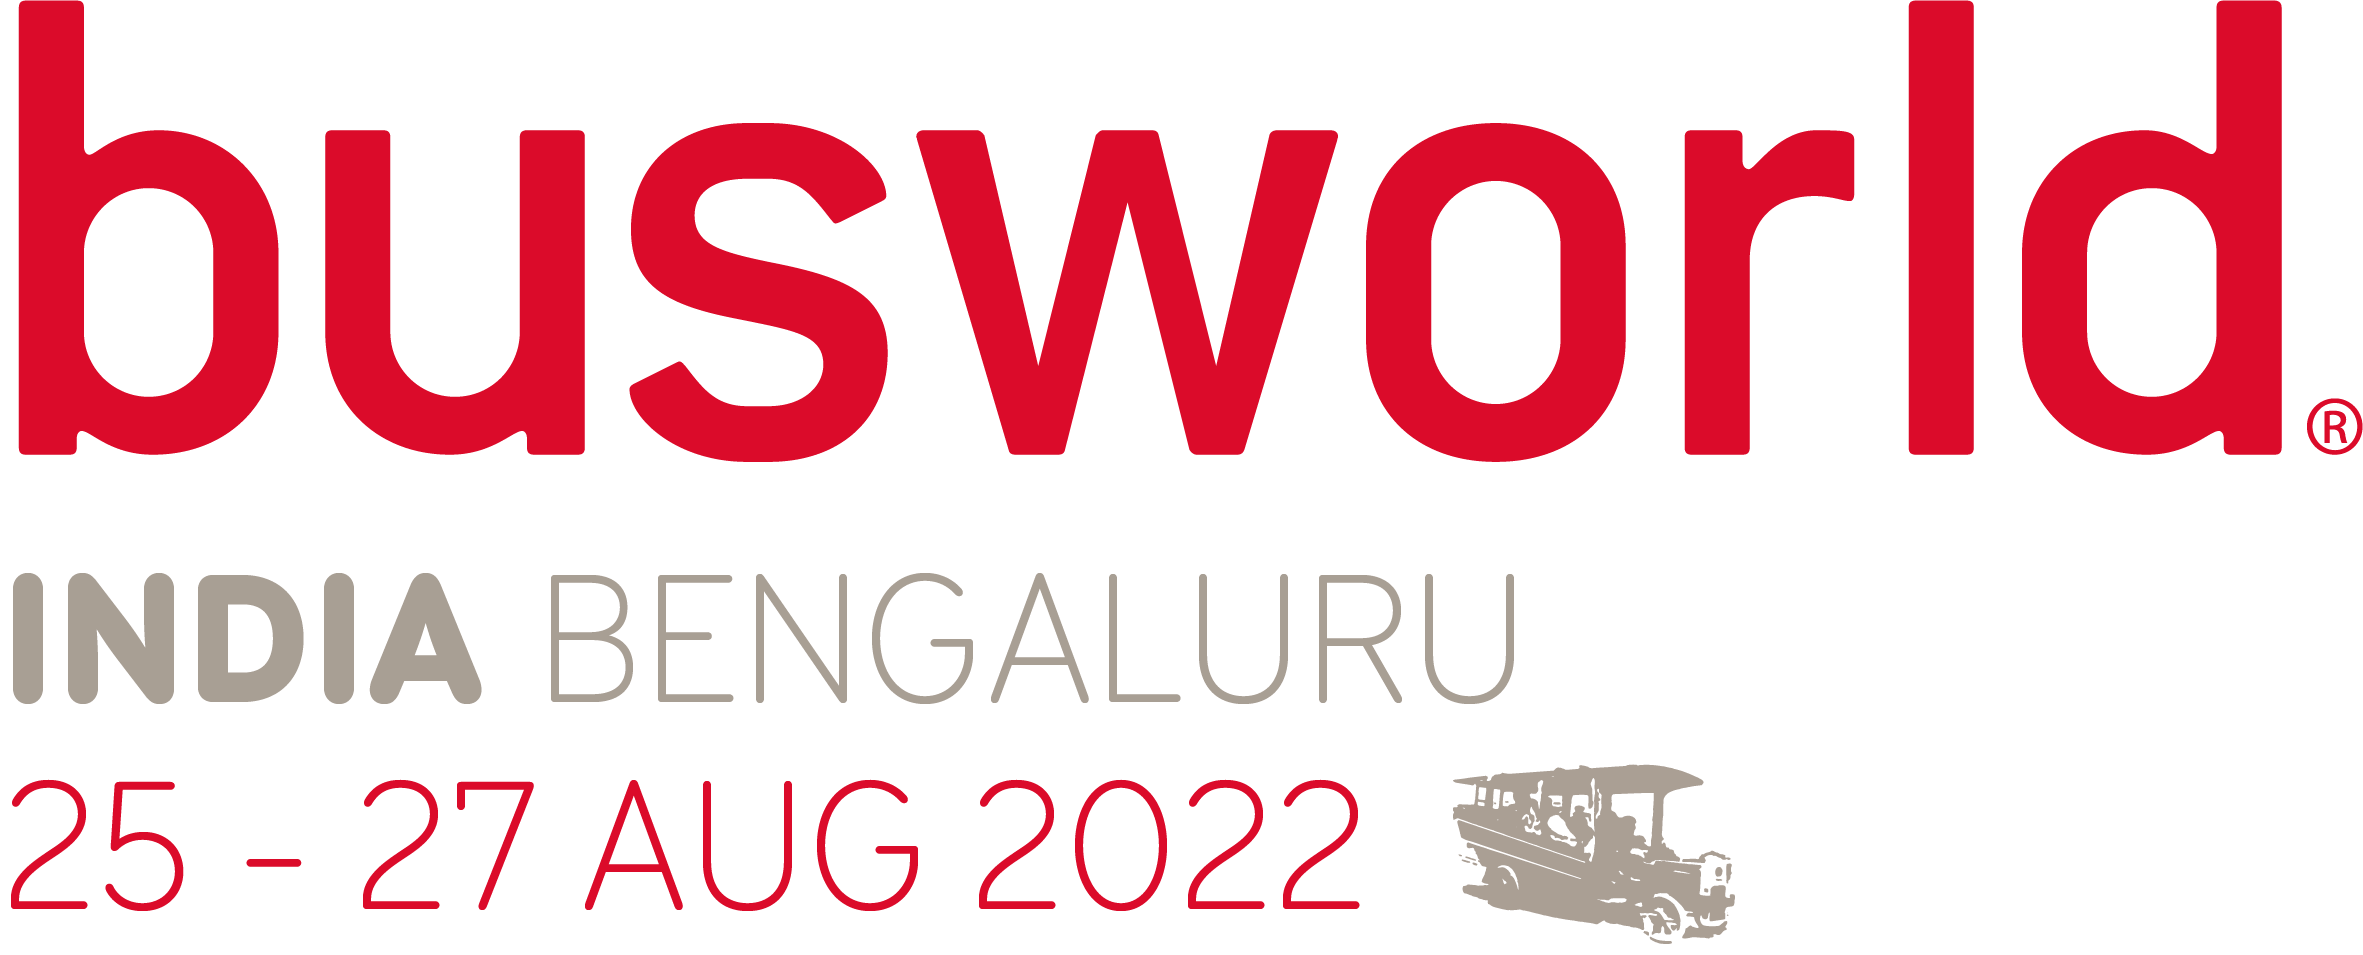 Busworld India 2022 logo